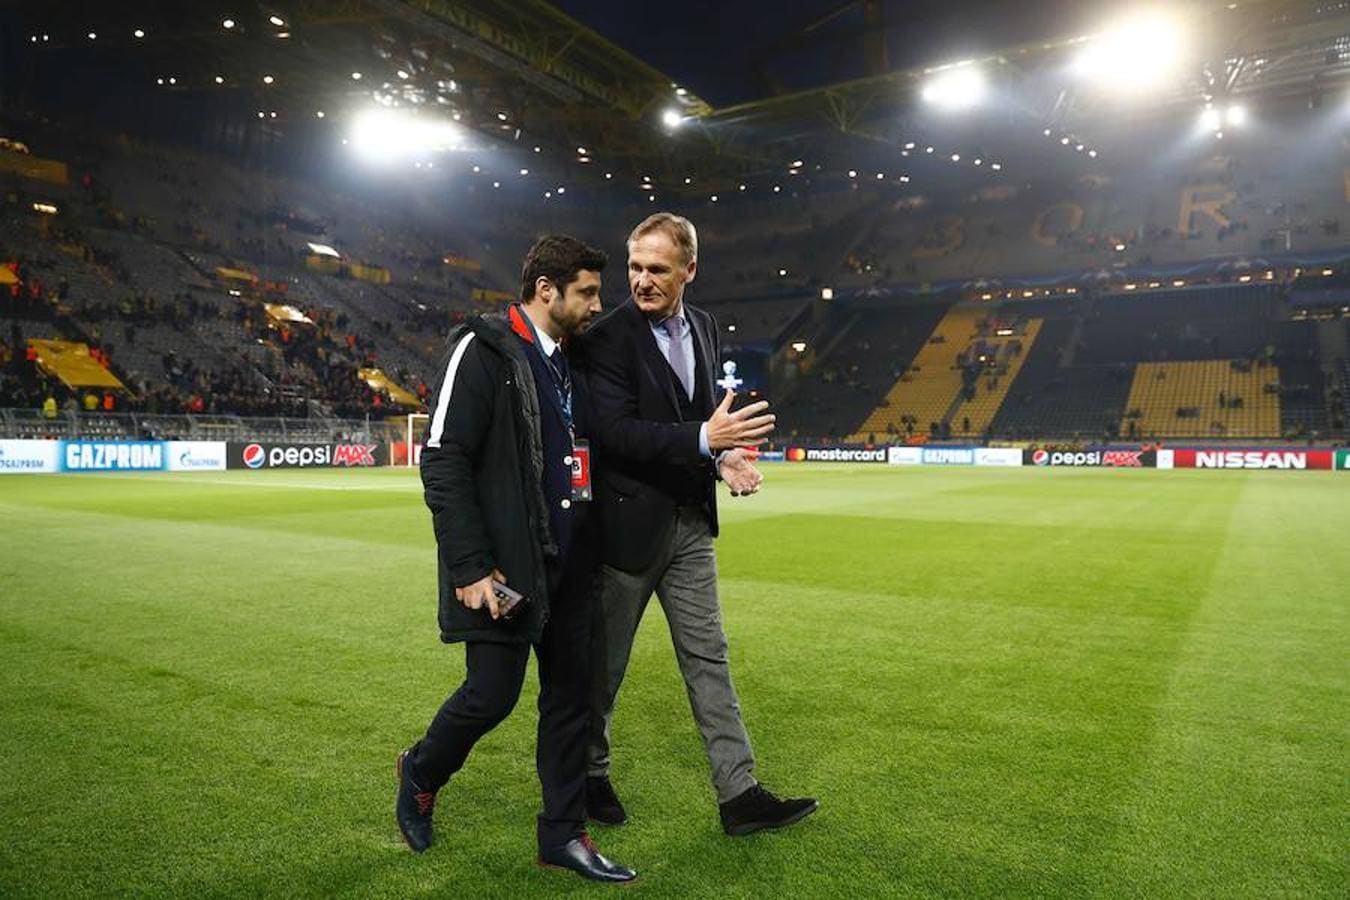 El CEO del Borussia de Dortmund, Hans-Joachim Watzke, sobre el césped del estadio. Watzke tranquilizó a los aficionados e hizo el comunicado oficial informando sobre la situación